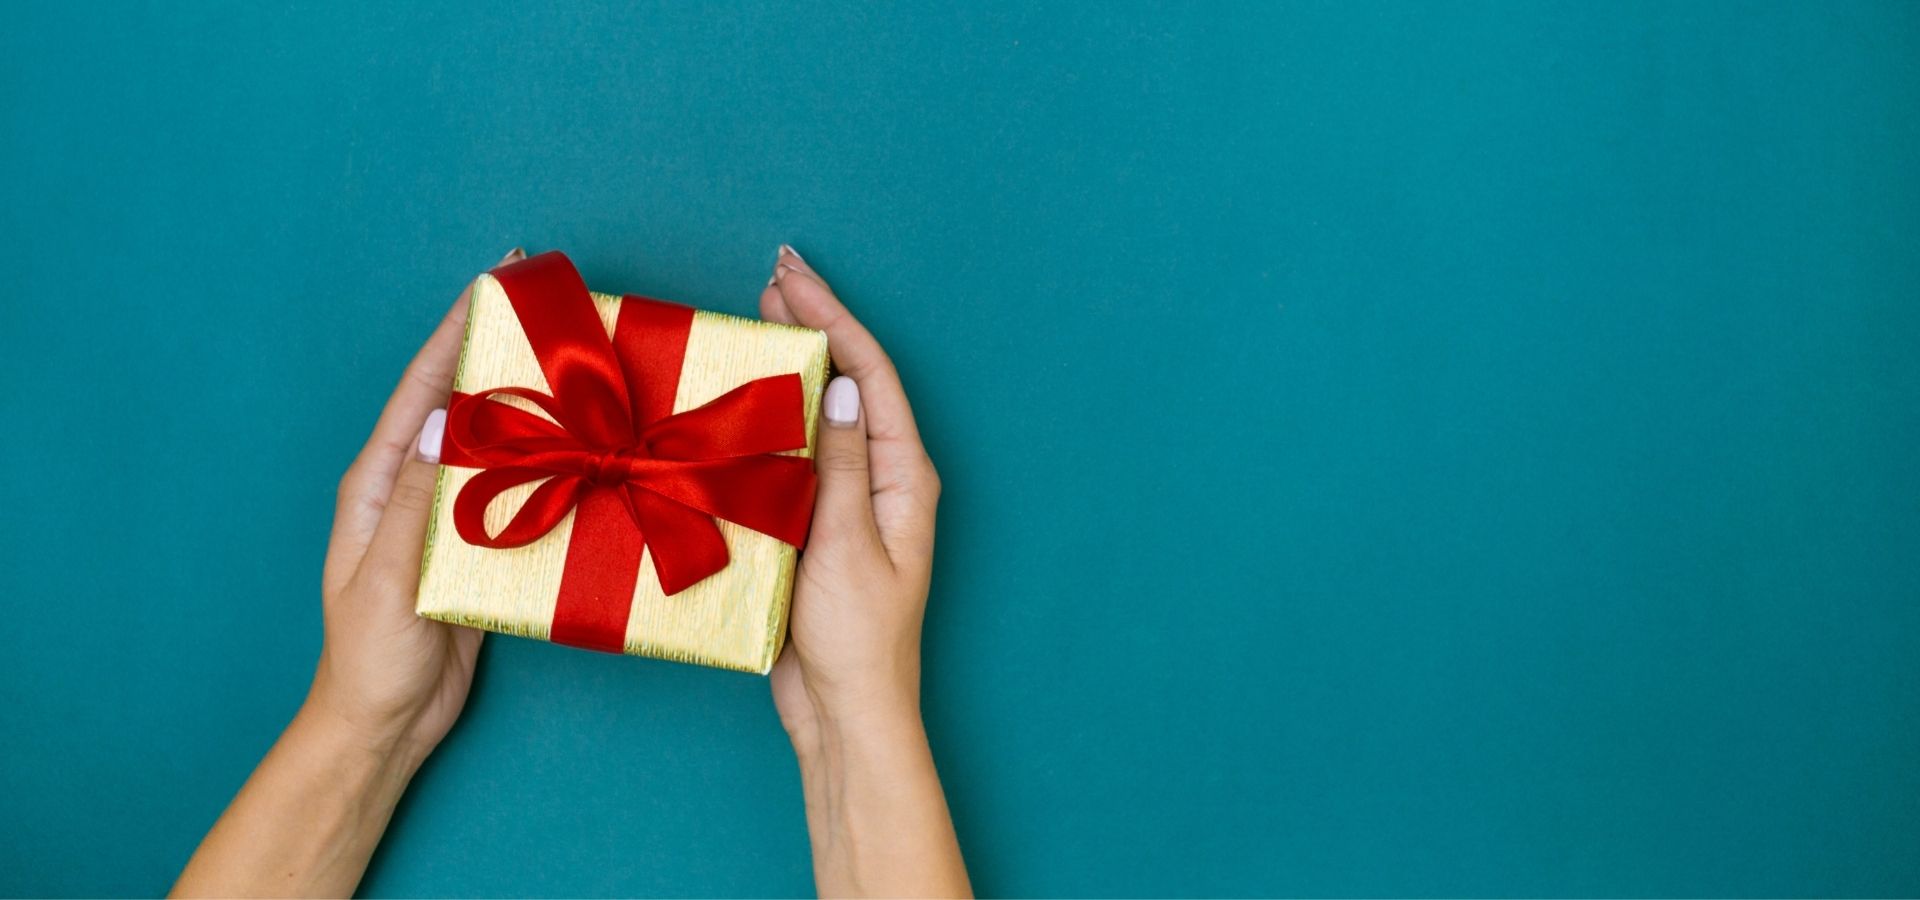 The present closed. Руки держат подарок. Держи подарок. Презент. Приоткрытая коробка с подарком.